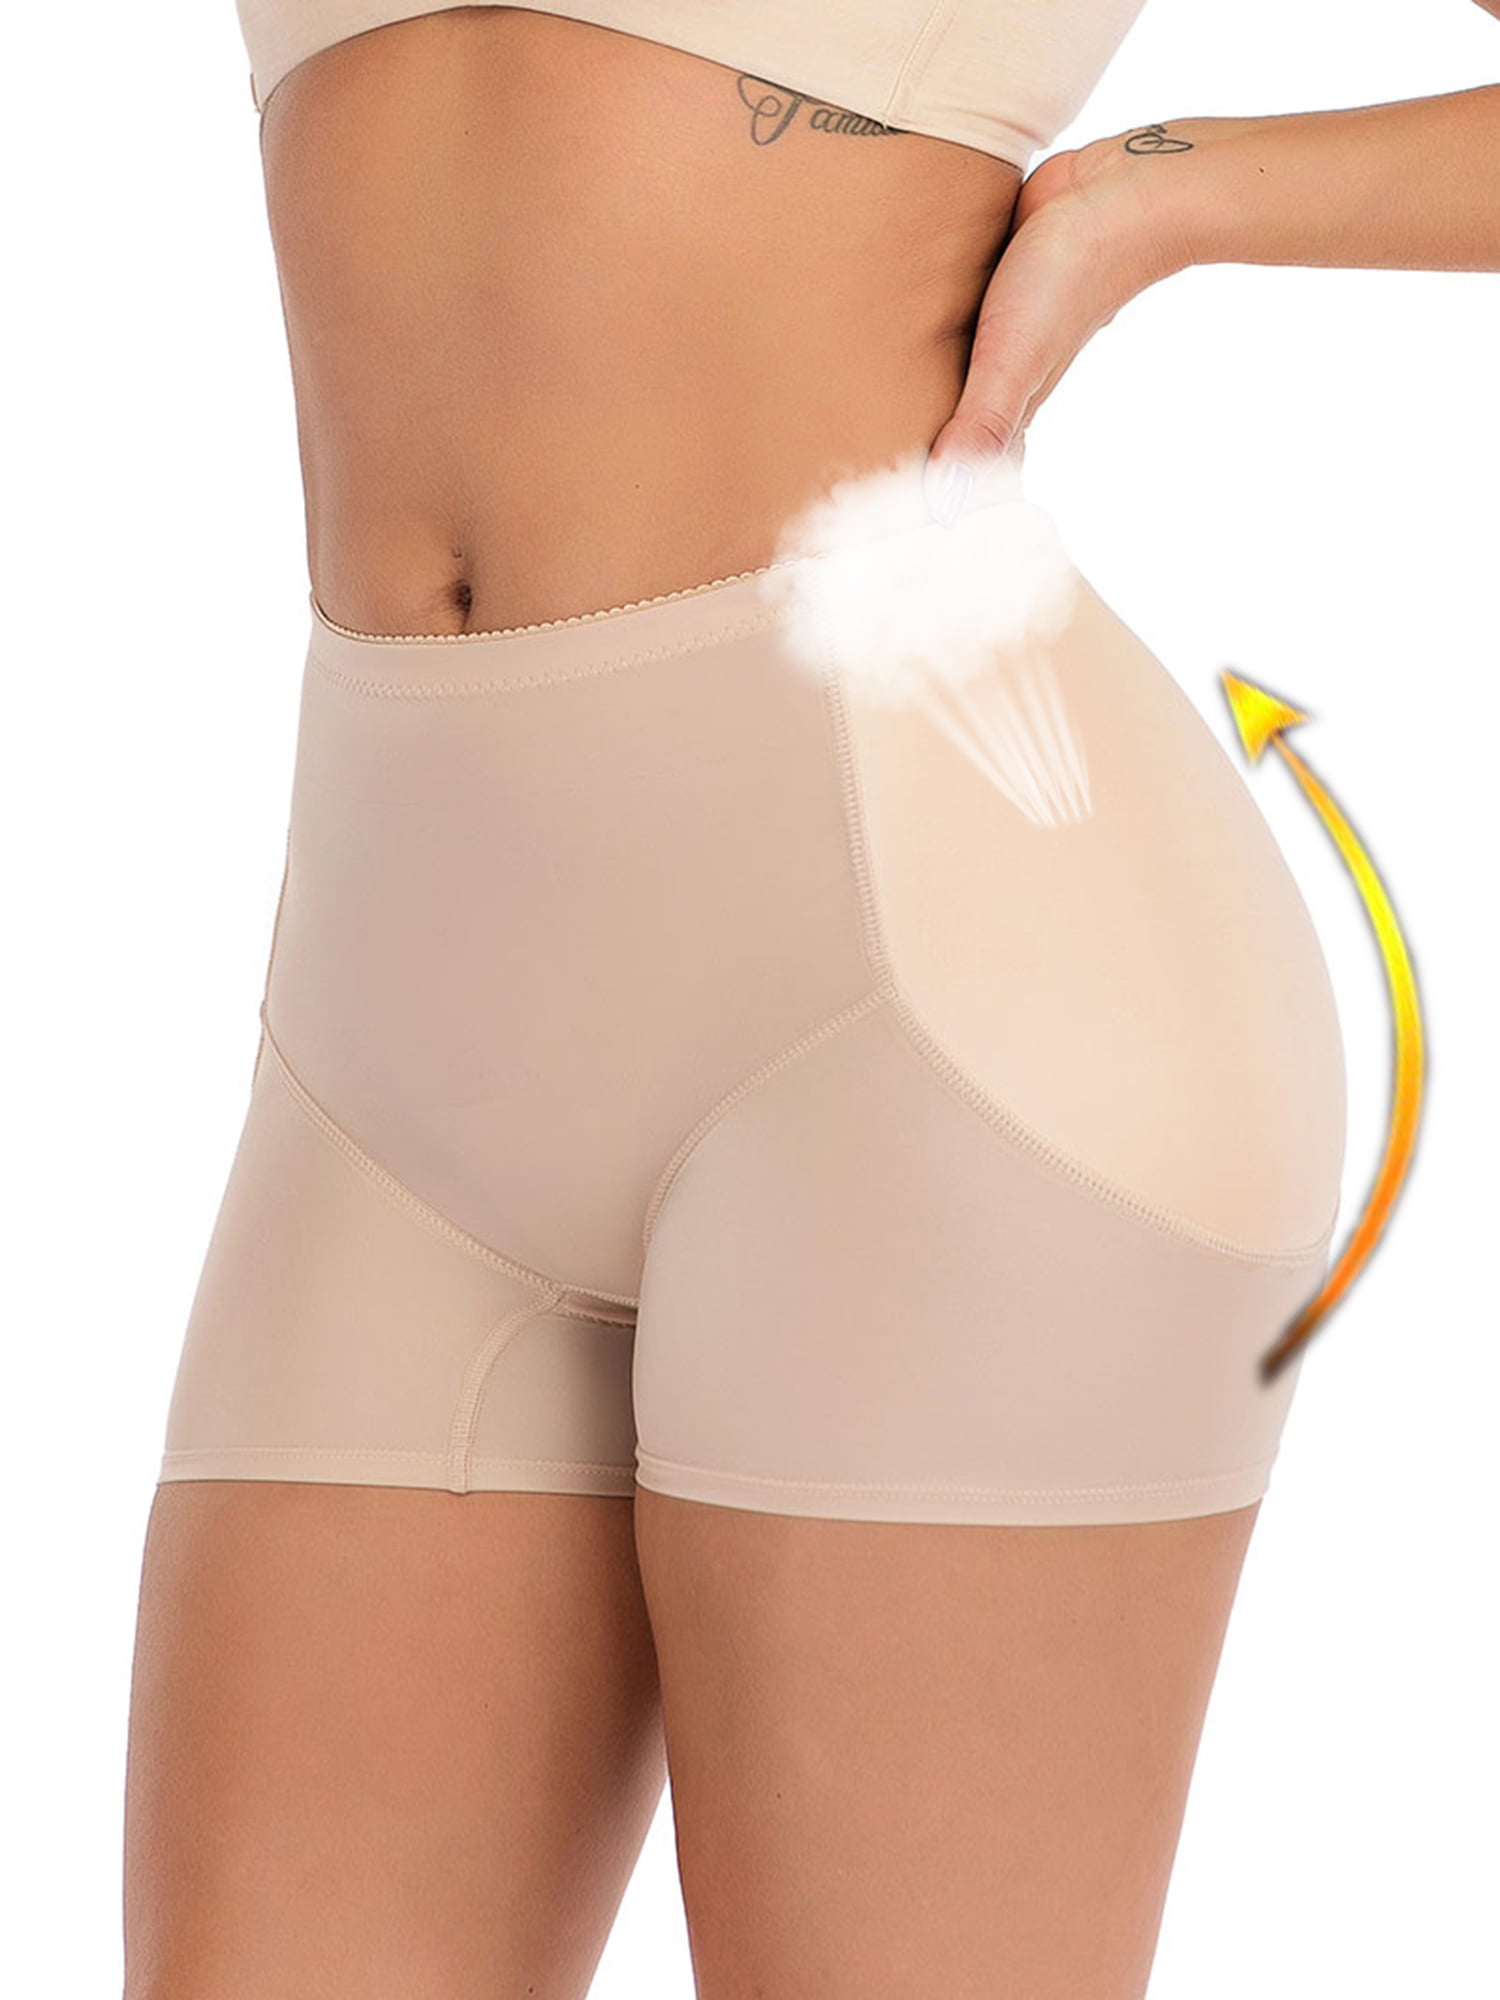 Lelinta Butt Lifter Padded Panty - Enhancing Body Shaper For Women